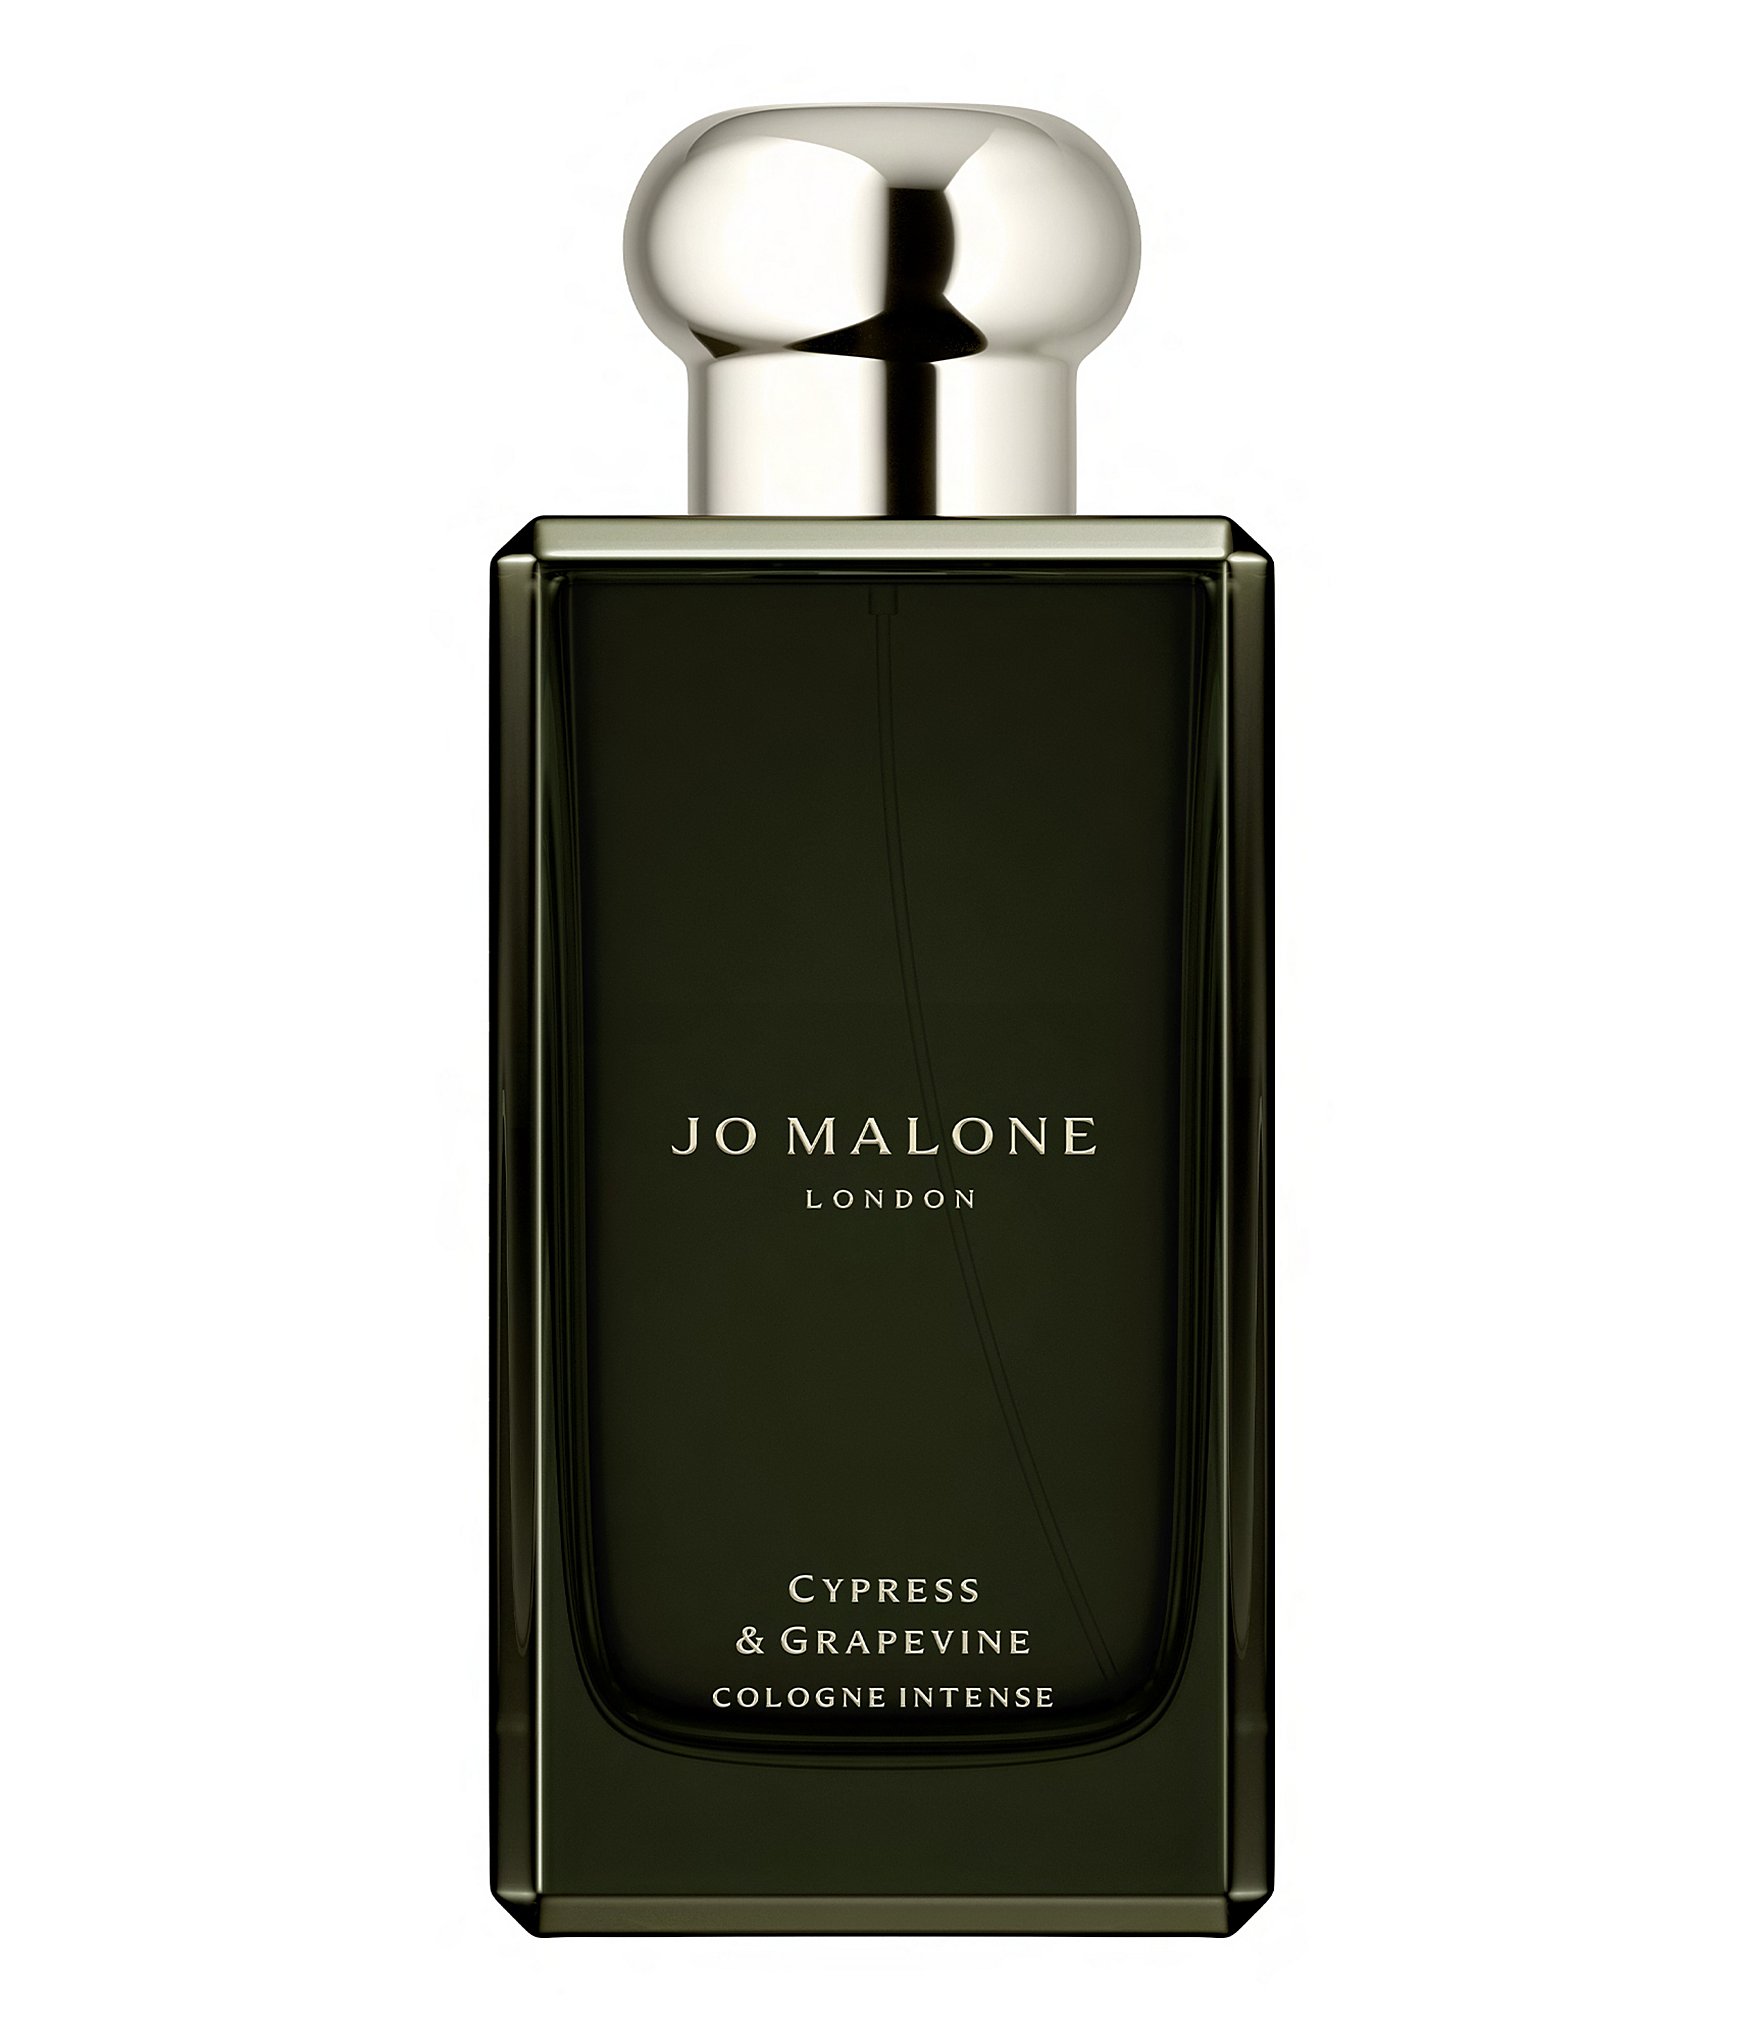 Jo Malone London Cypress & Grapevine Cologne Intense, 3.4-oz. | Dillard's